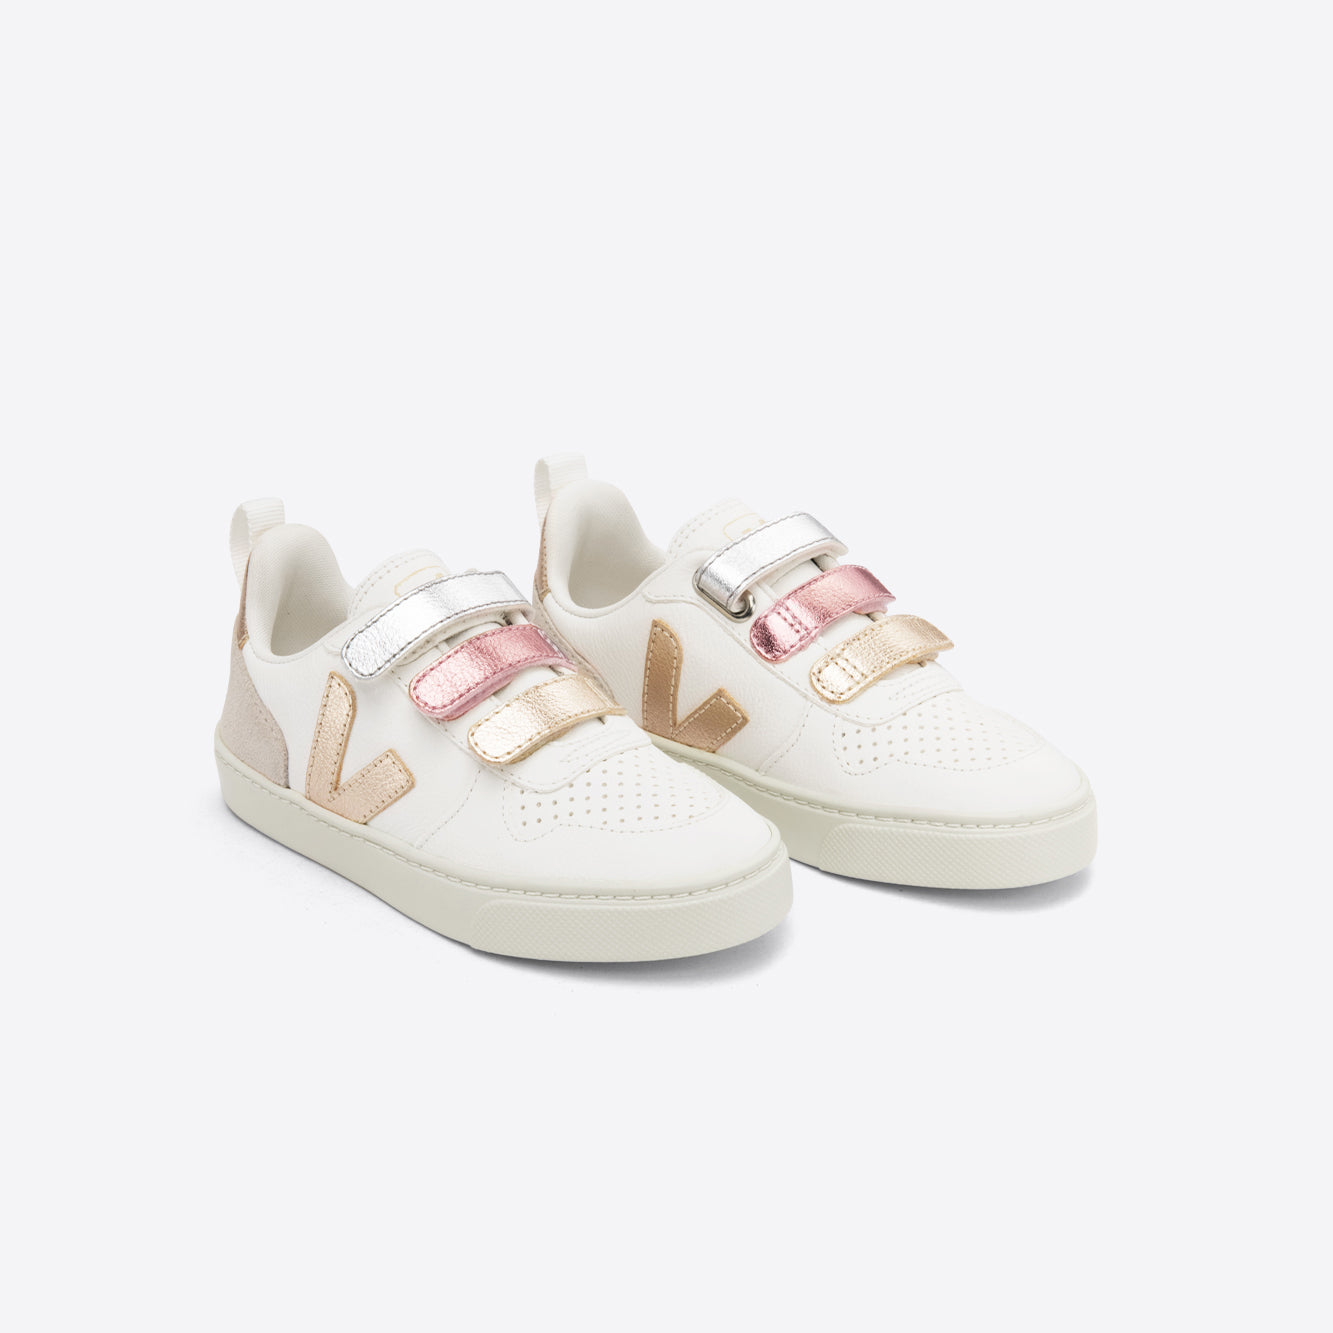 Boys & Girls White "SMALL V-10 VELCRO" Shoes